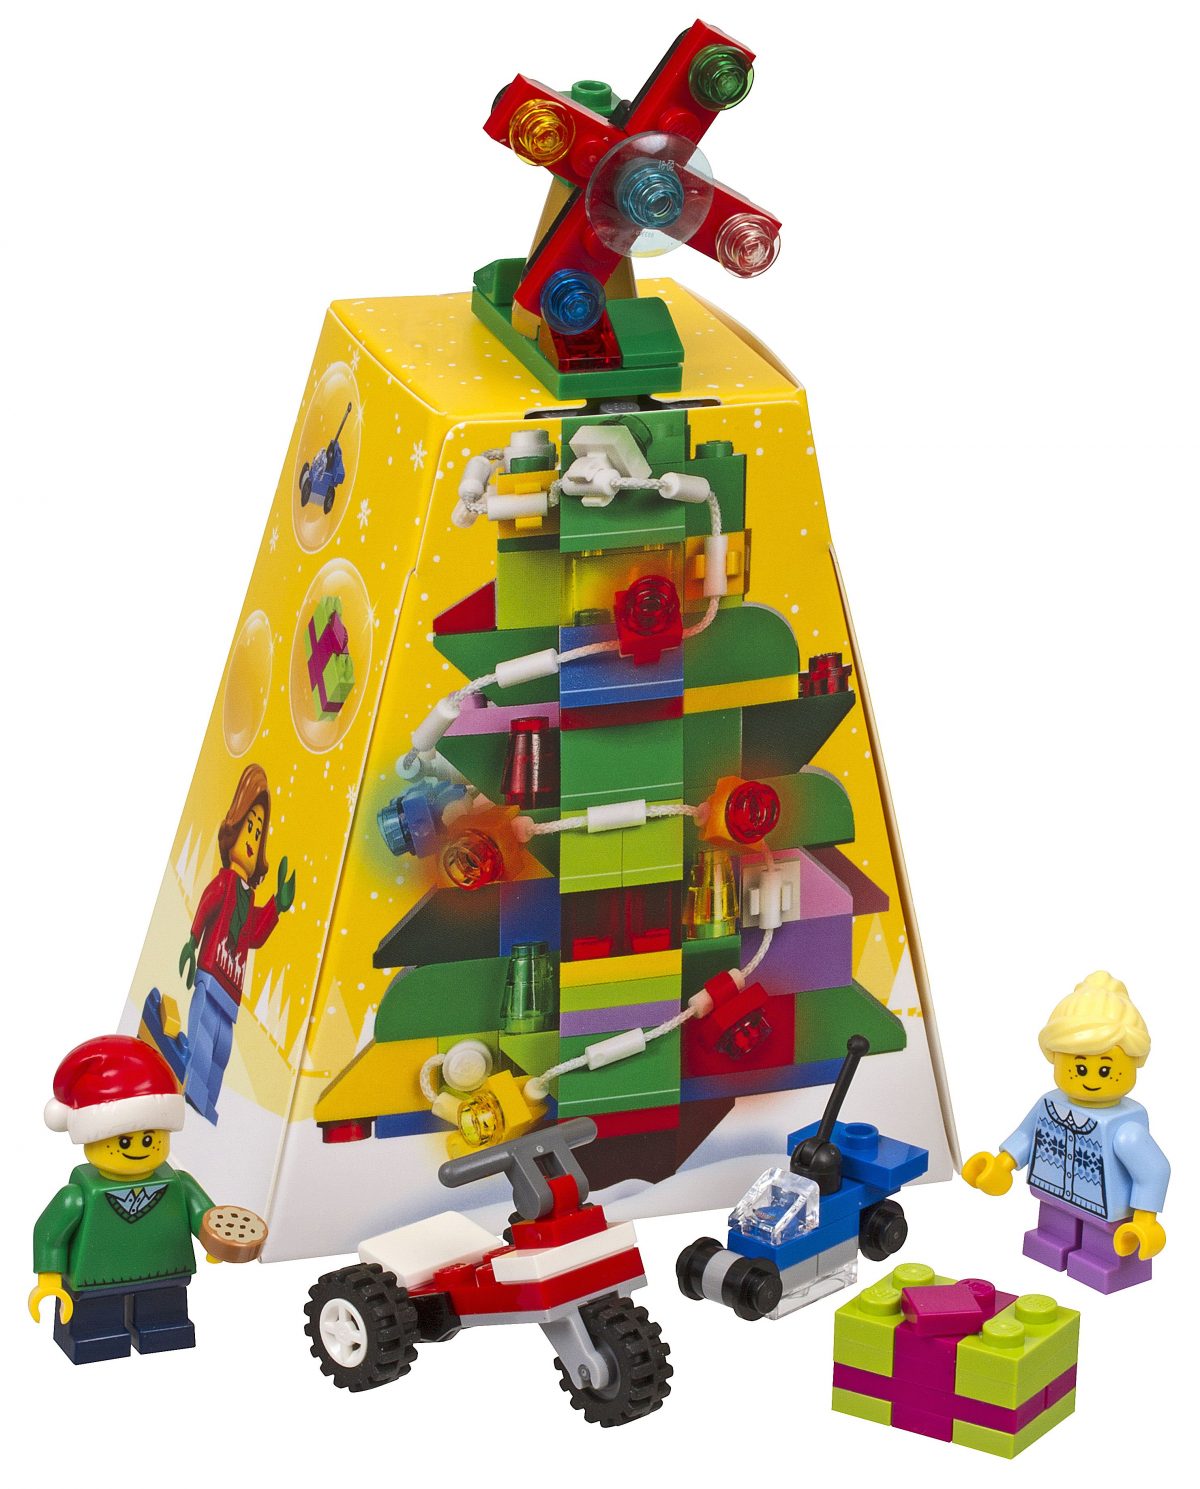 Albero Di Natale Lego.Svelato Il Set Lego Di Natale Christmas Ornament 5004934 Mattonito